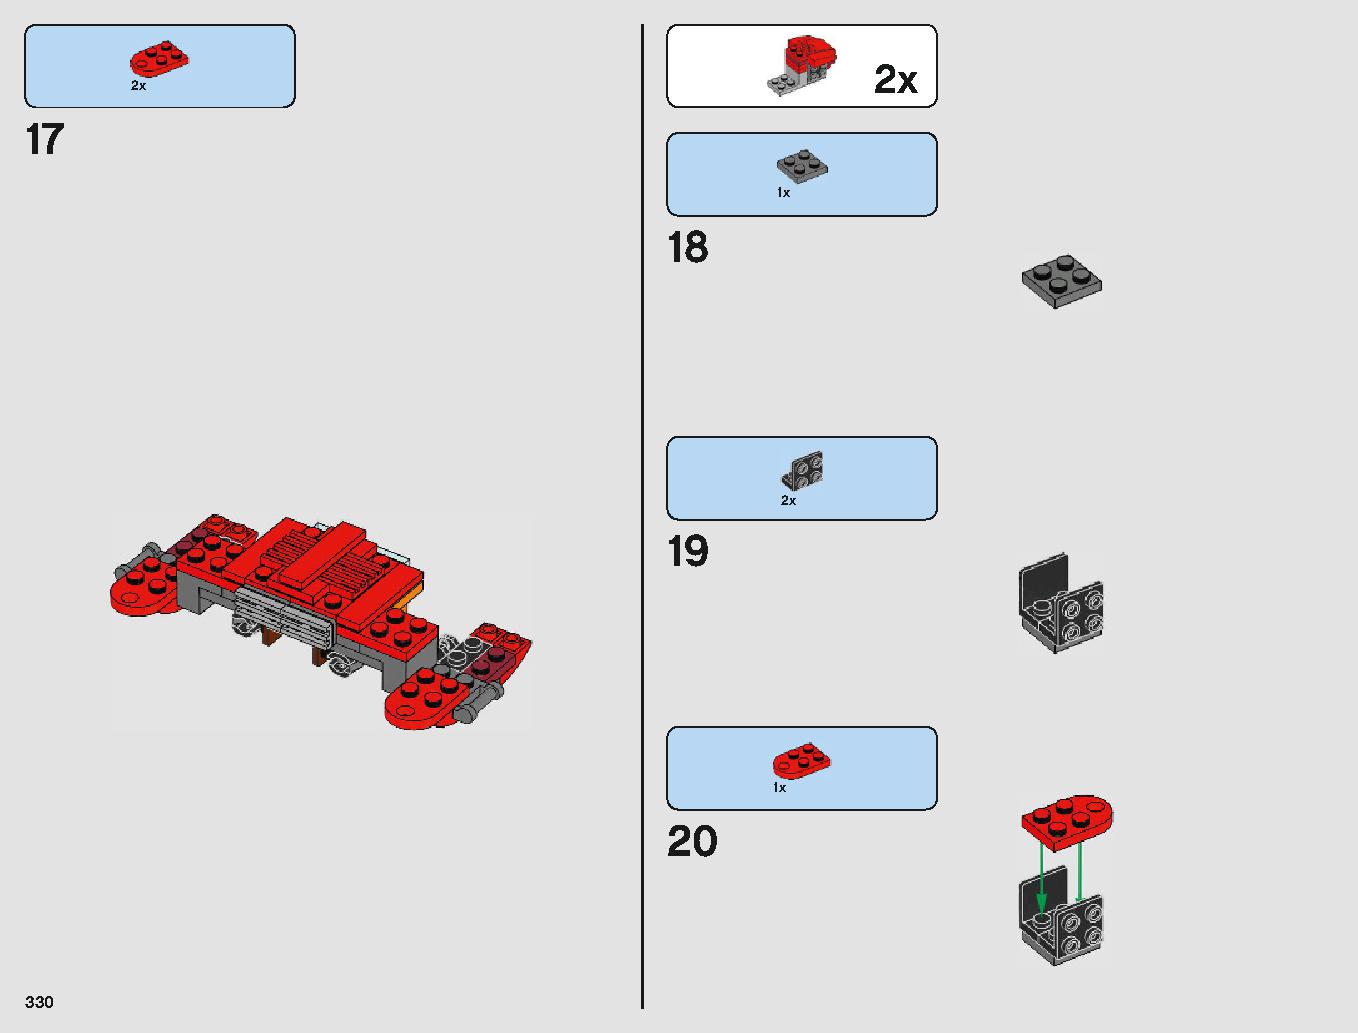 クラウド・シティ 75222 レゴの商品情報 レゴの説明書・組立方法 330 page